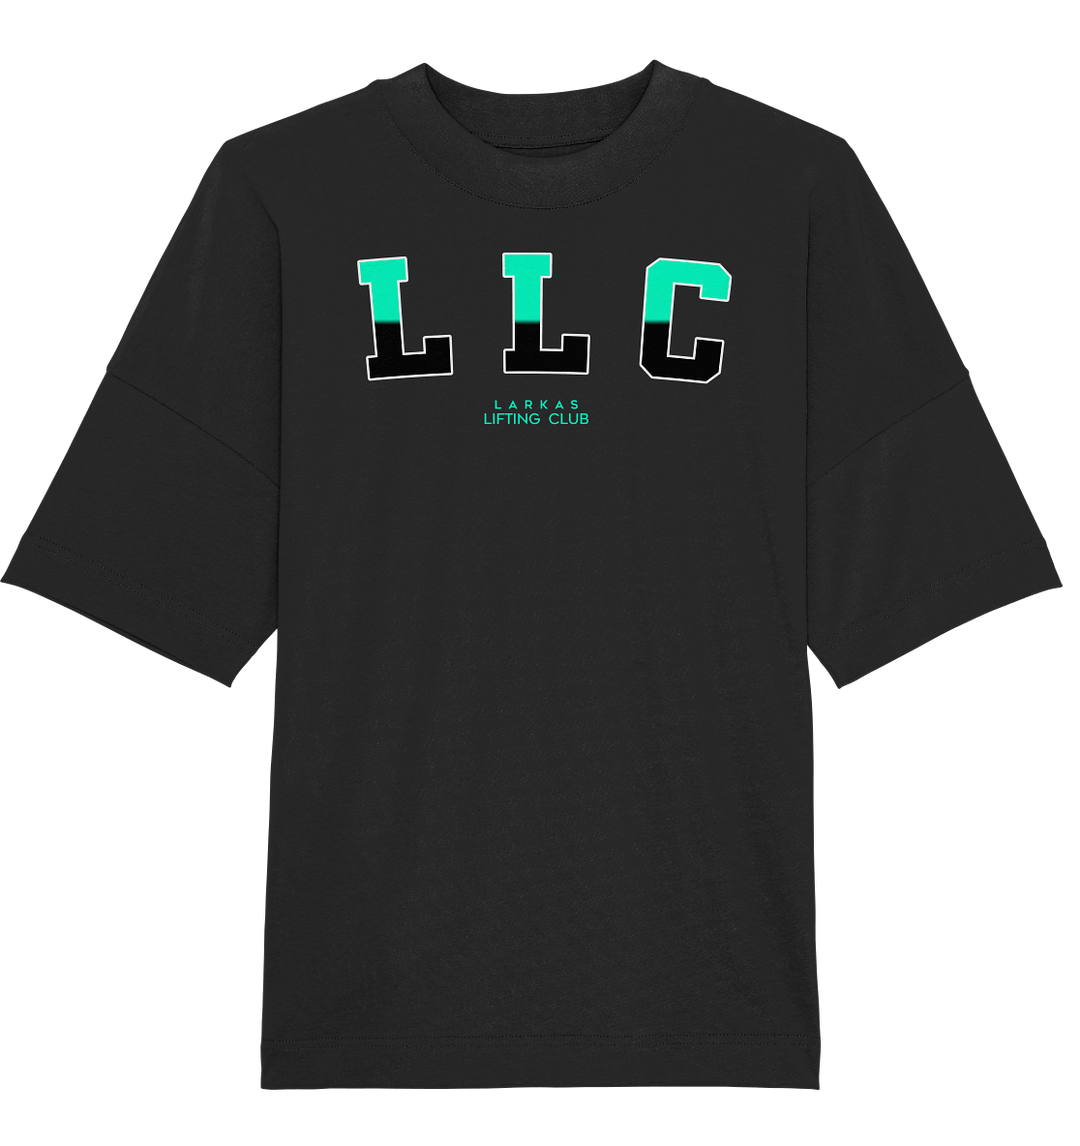 LLC V2 Oversized T-Shirt